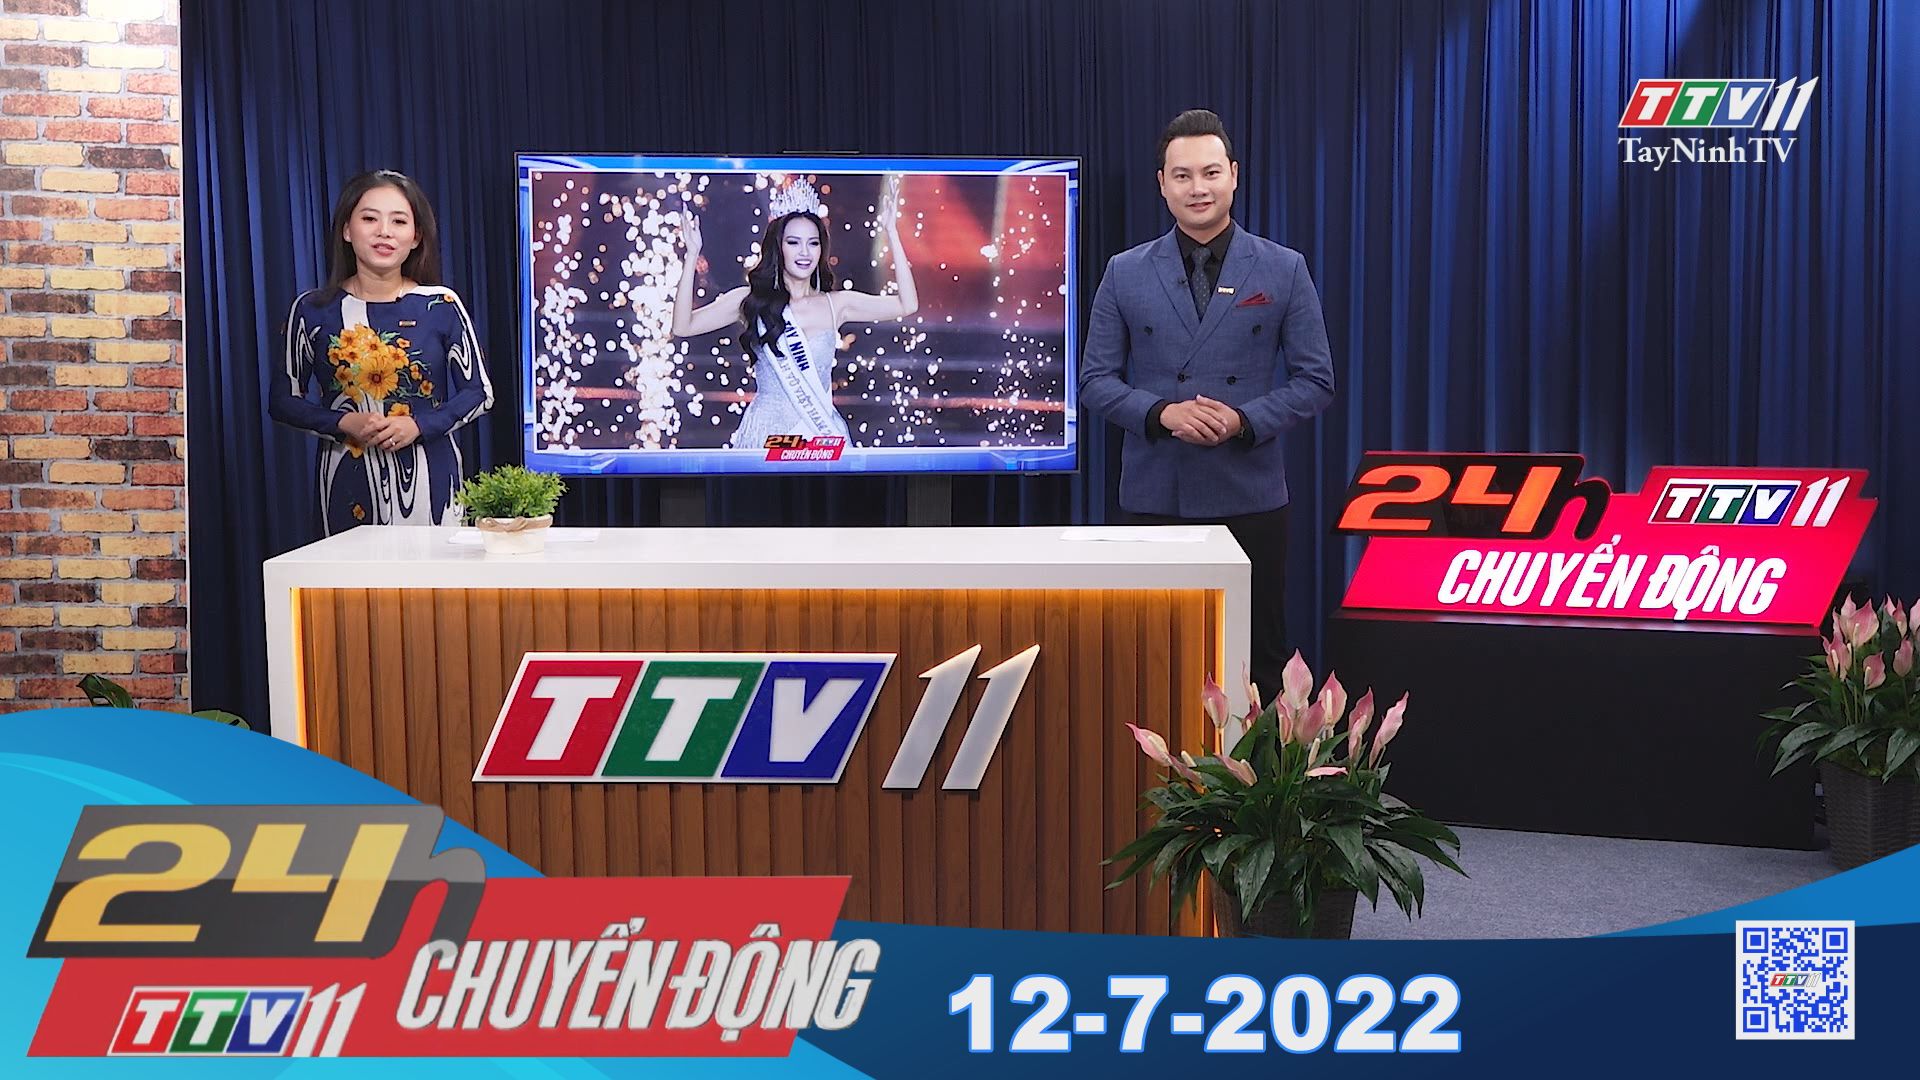 24h Chuyển động 12-7-2022 | Tin tức hôm nay | TayNinhTV